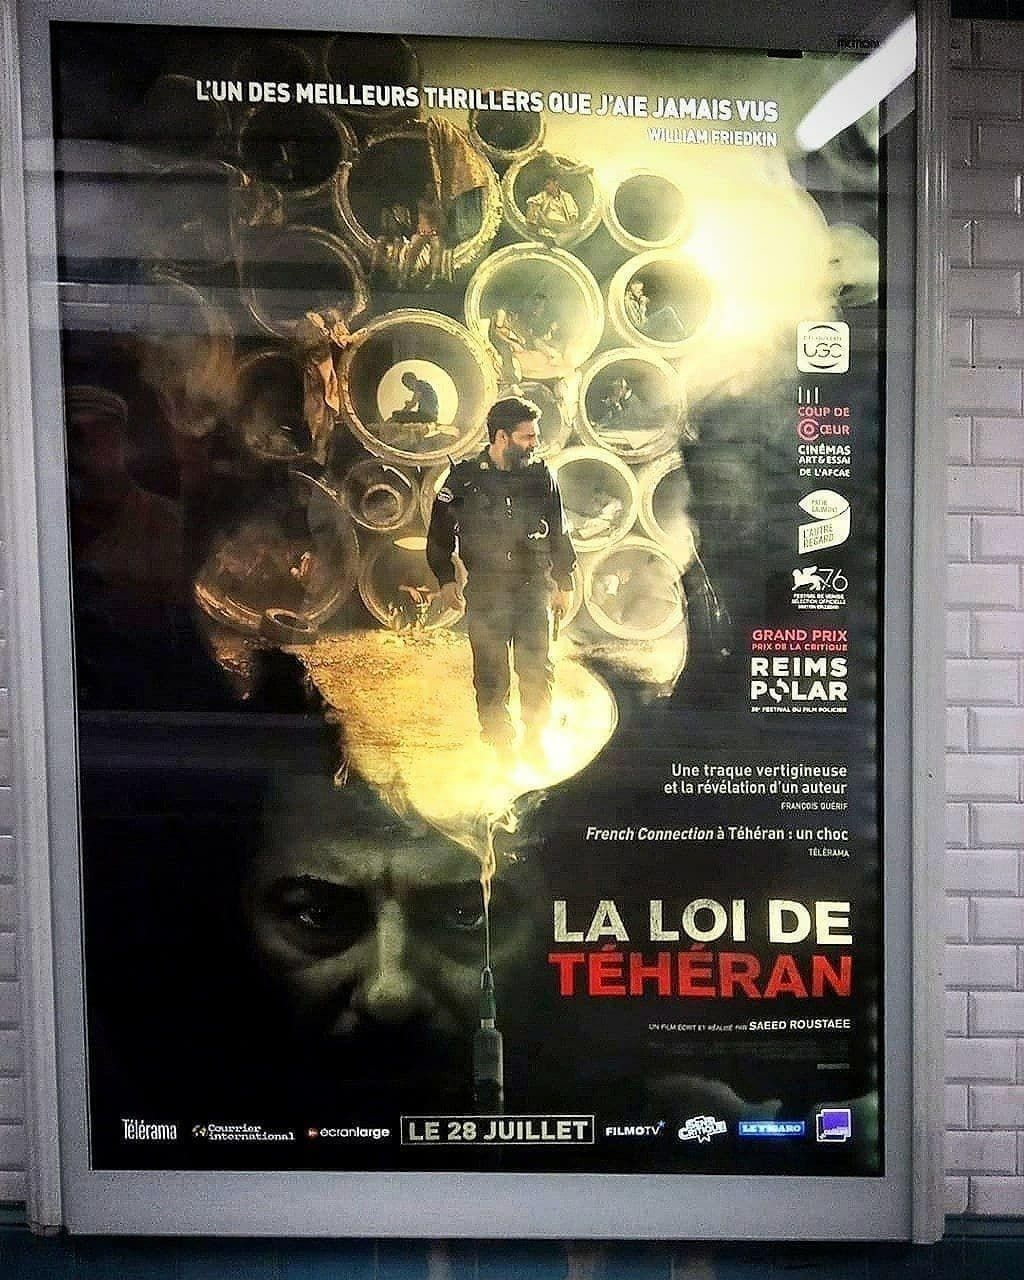 پوستر فیلم معروف ایرانی در پاریس+ عکس